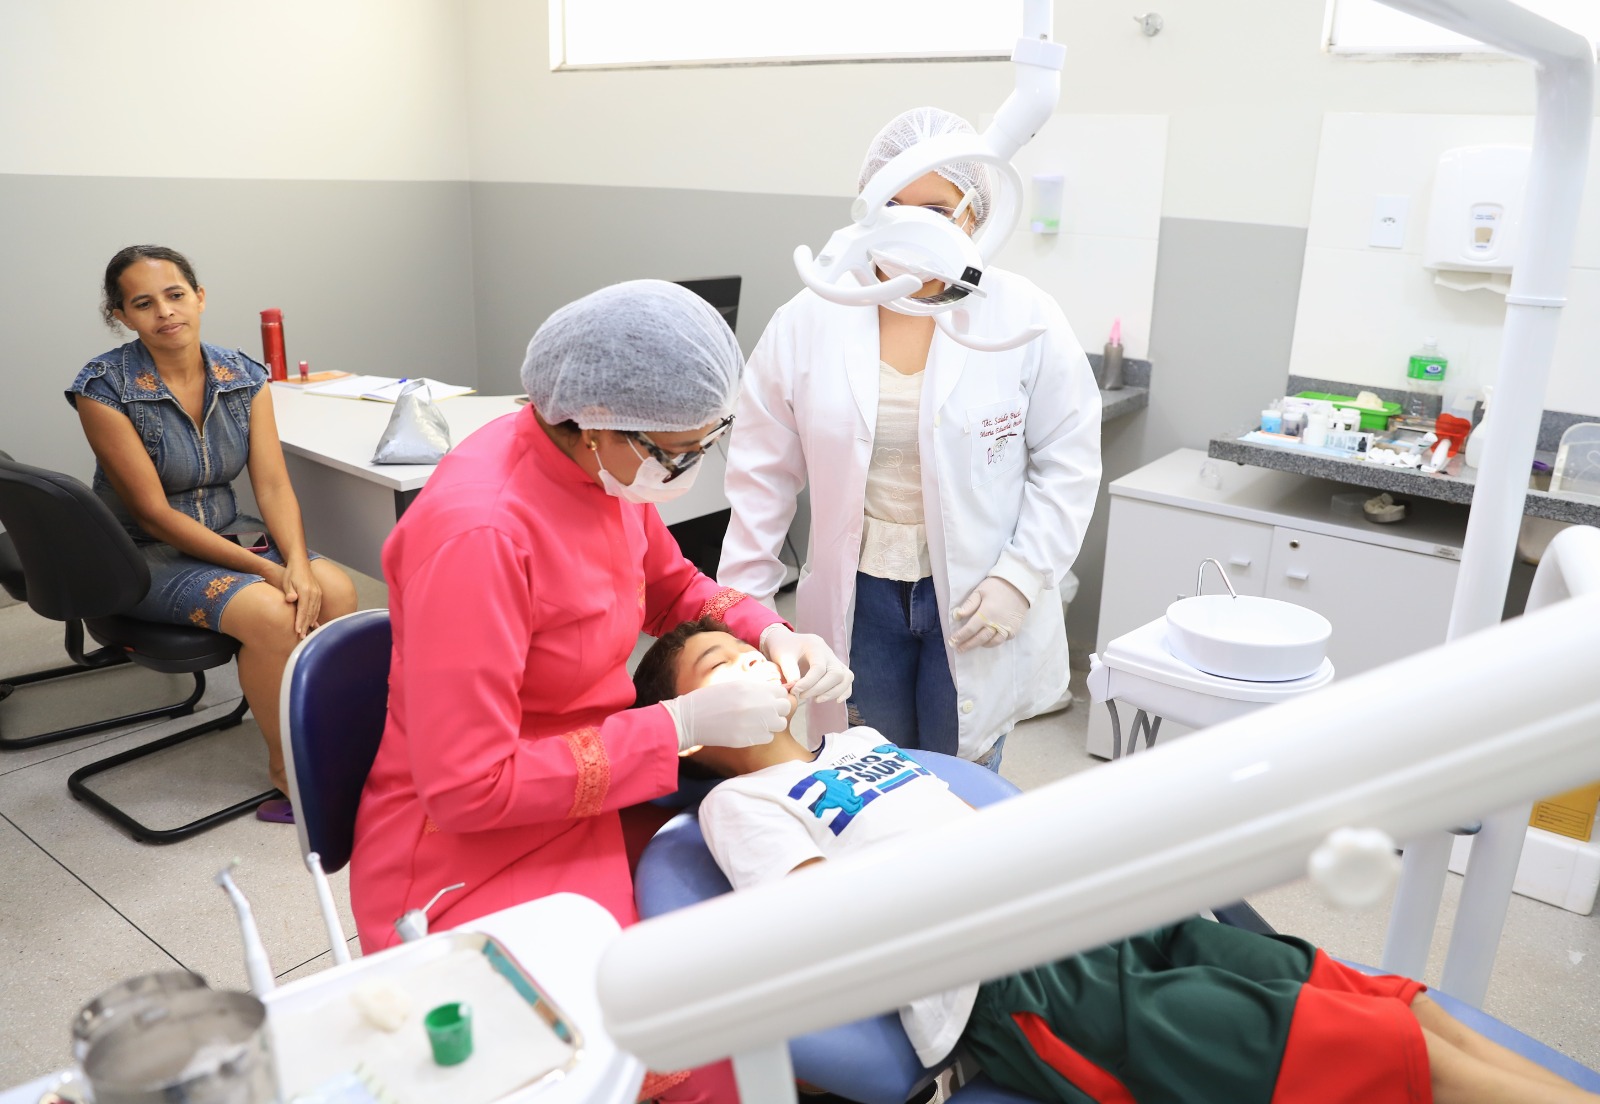 Foram contratados 60 novos profissionais entre cirurgiões dentistas, auxiliares de higiene bucal, enfermeiros e médicos para reforçar as equipes de atendimento